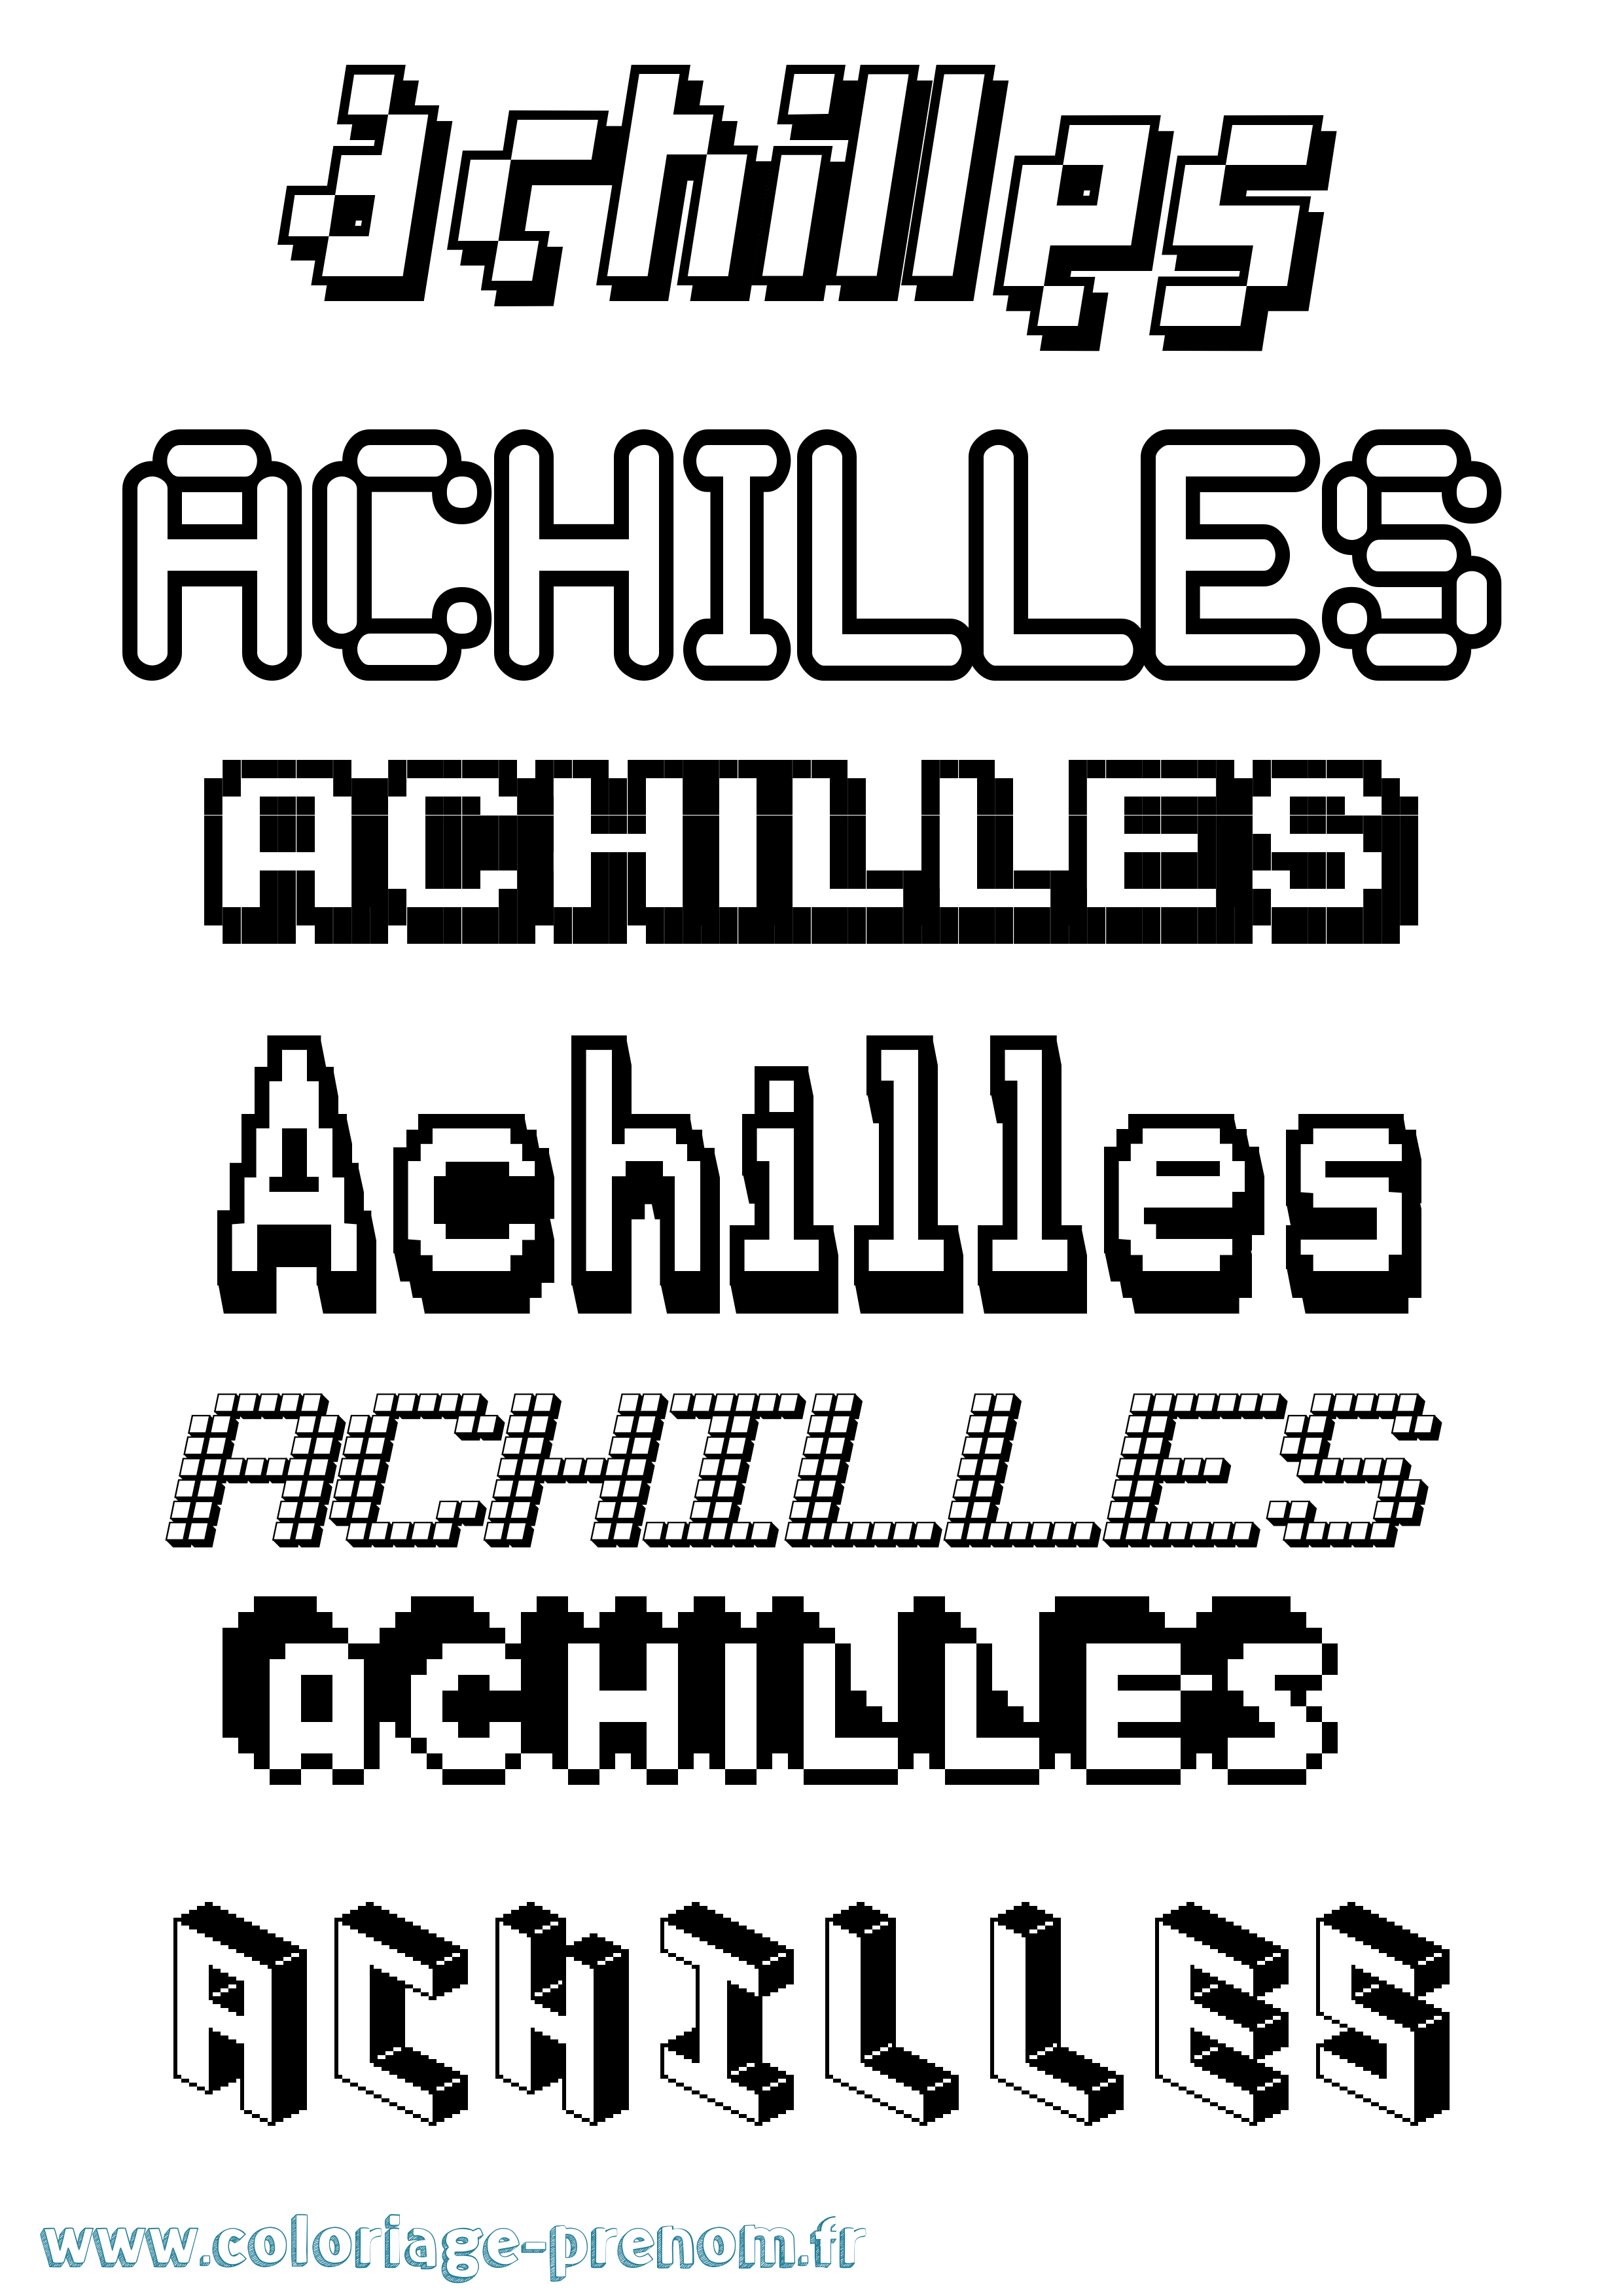 Coloriage prénom Achilles Pixel